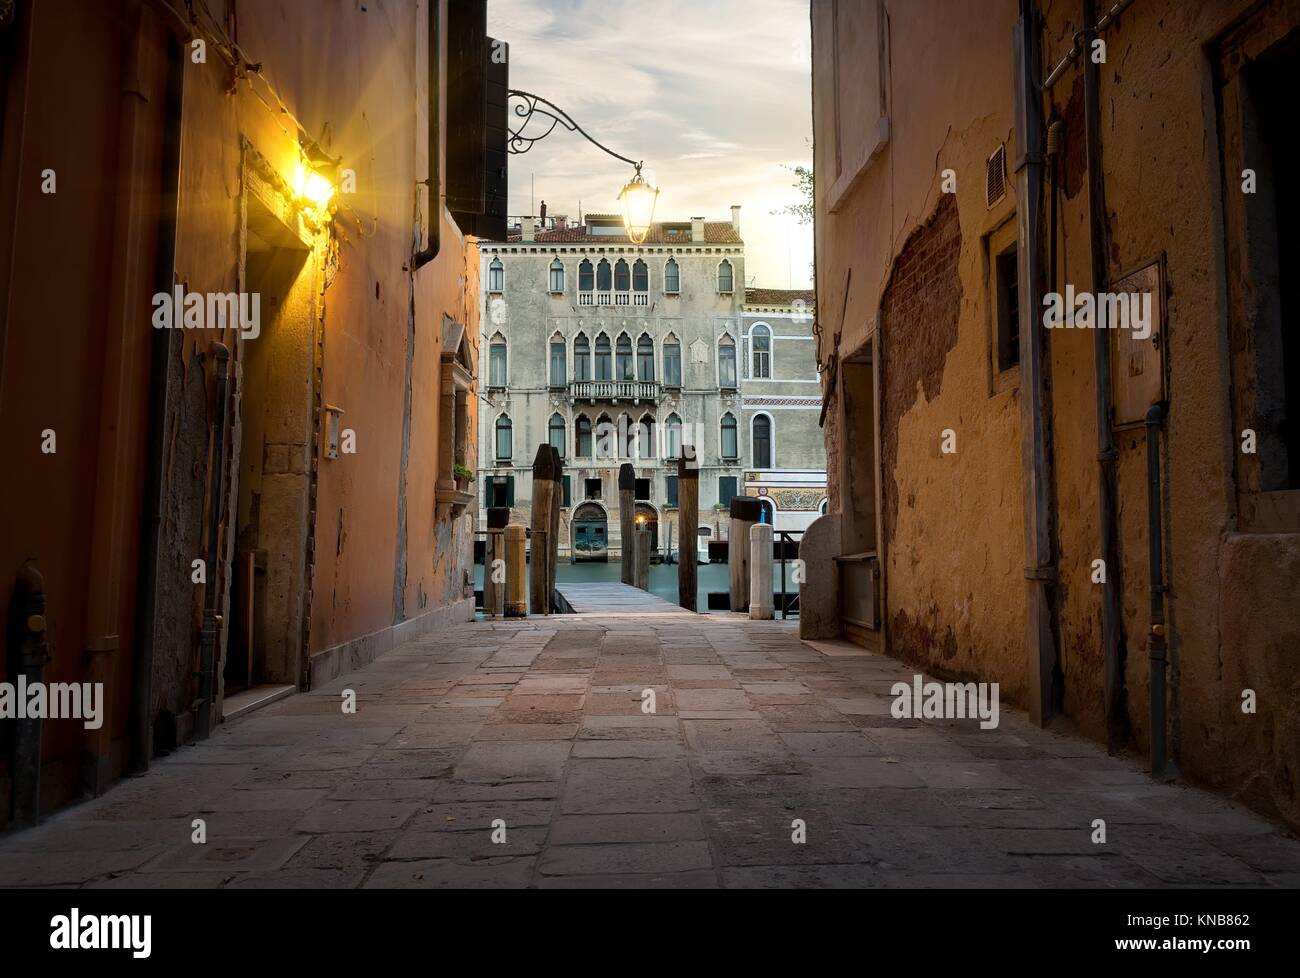 Calle angosta en Venecia que conduce a un muelle, Italia. Foto de stock